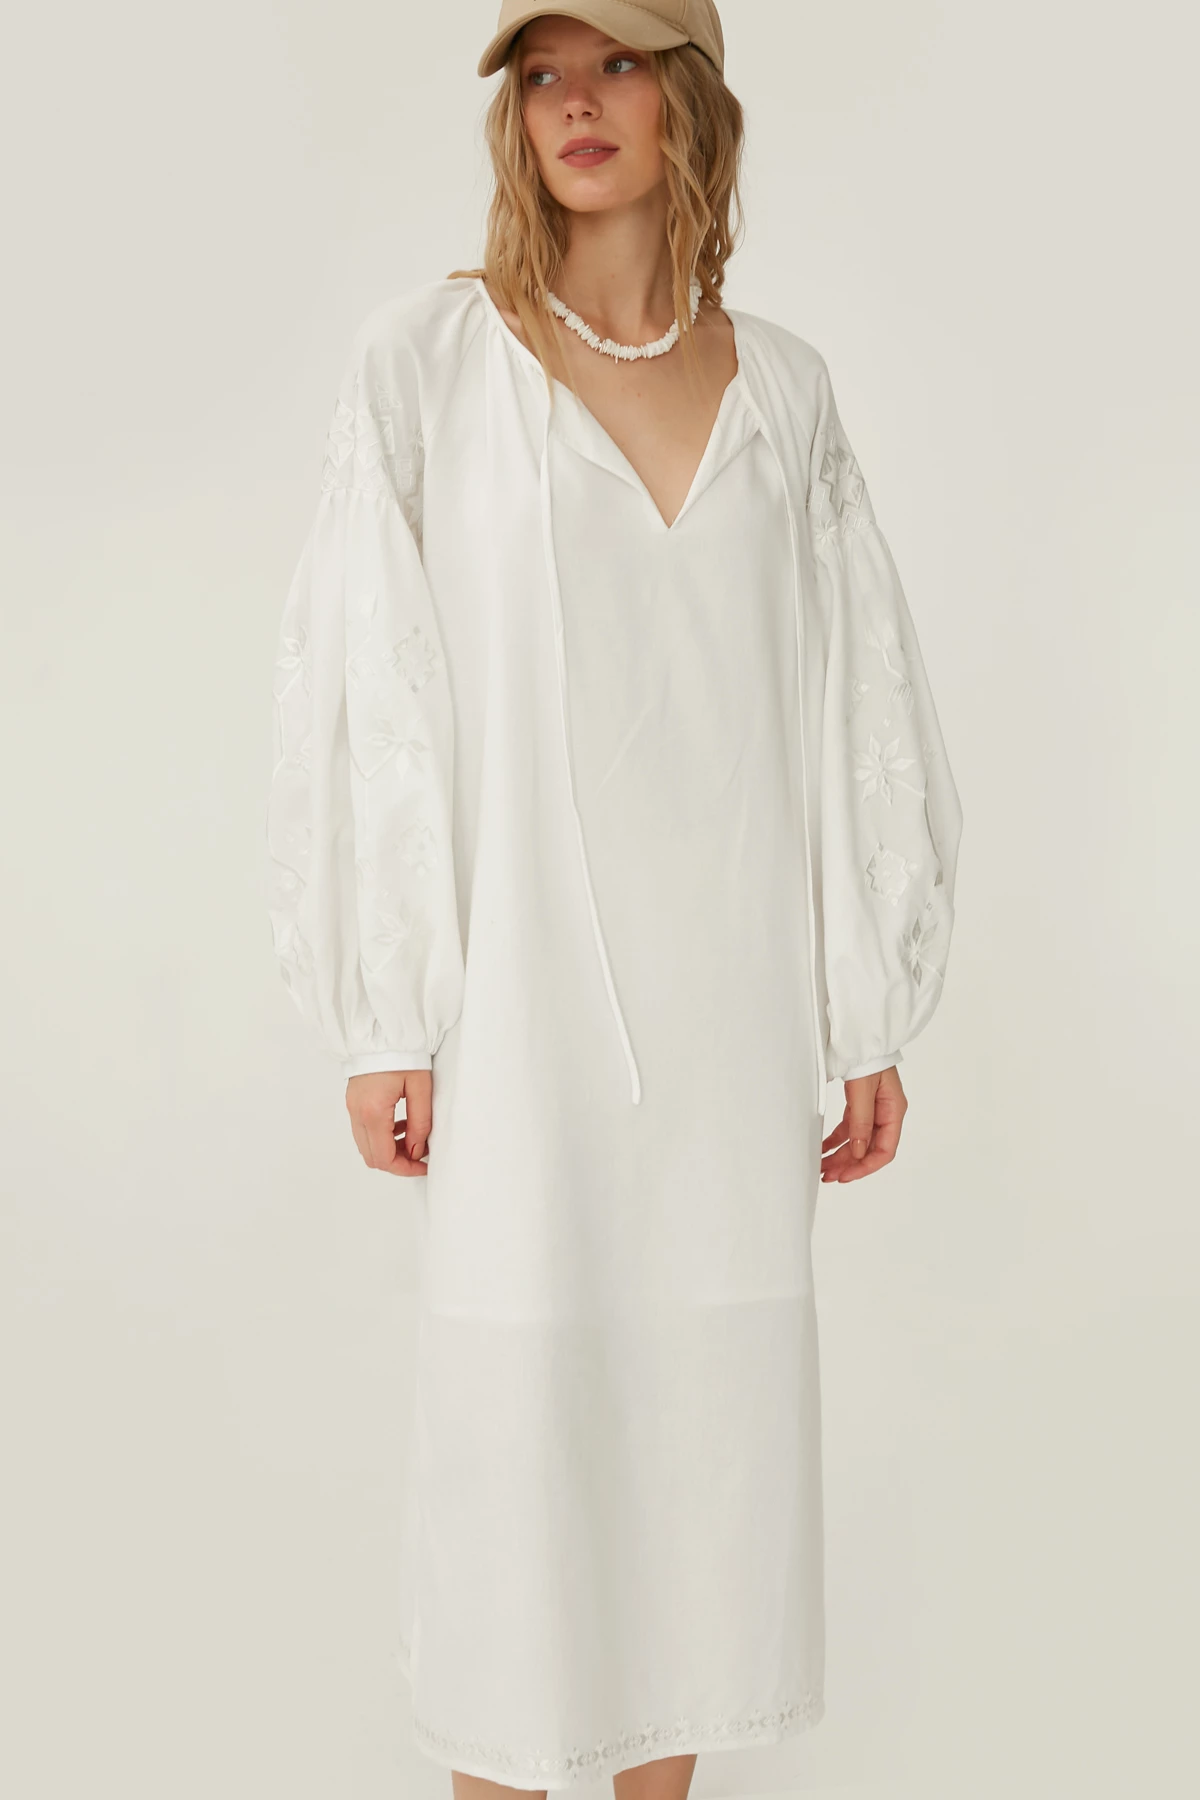 Молочна вишита сукня "білим по білому" з льоном, фото 3